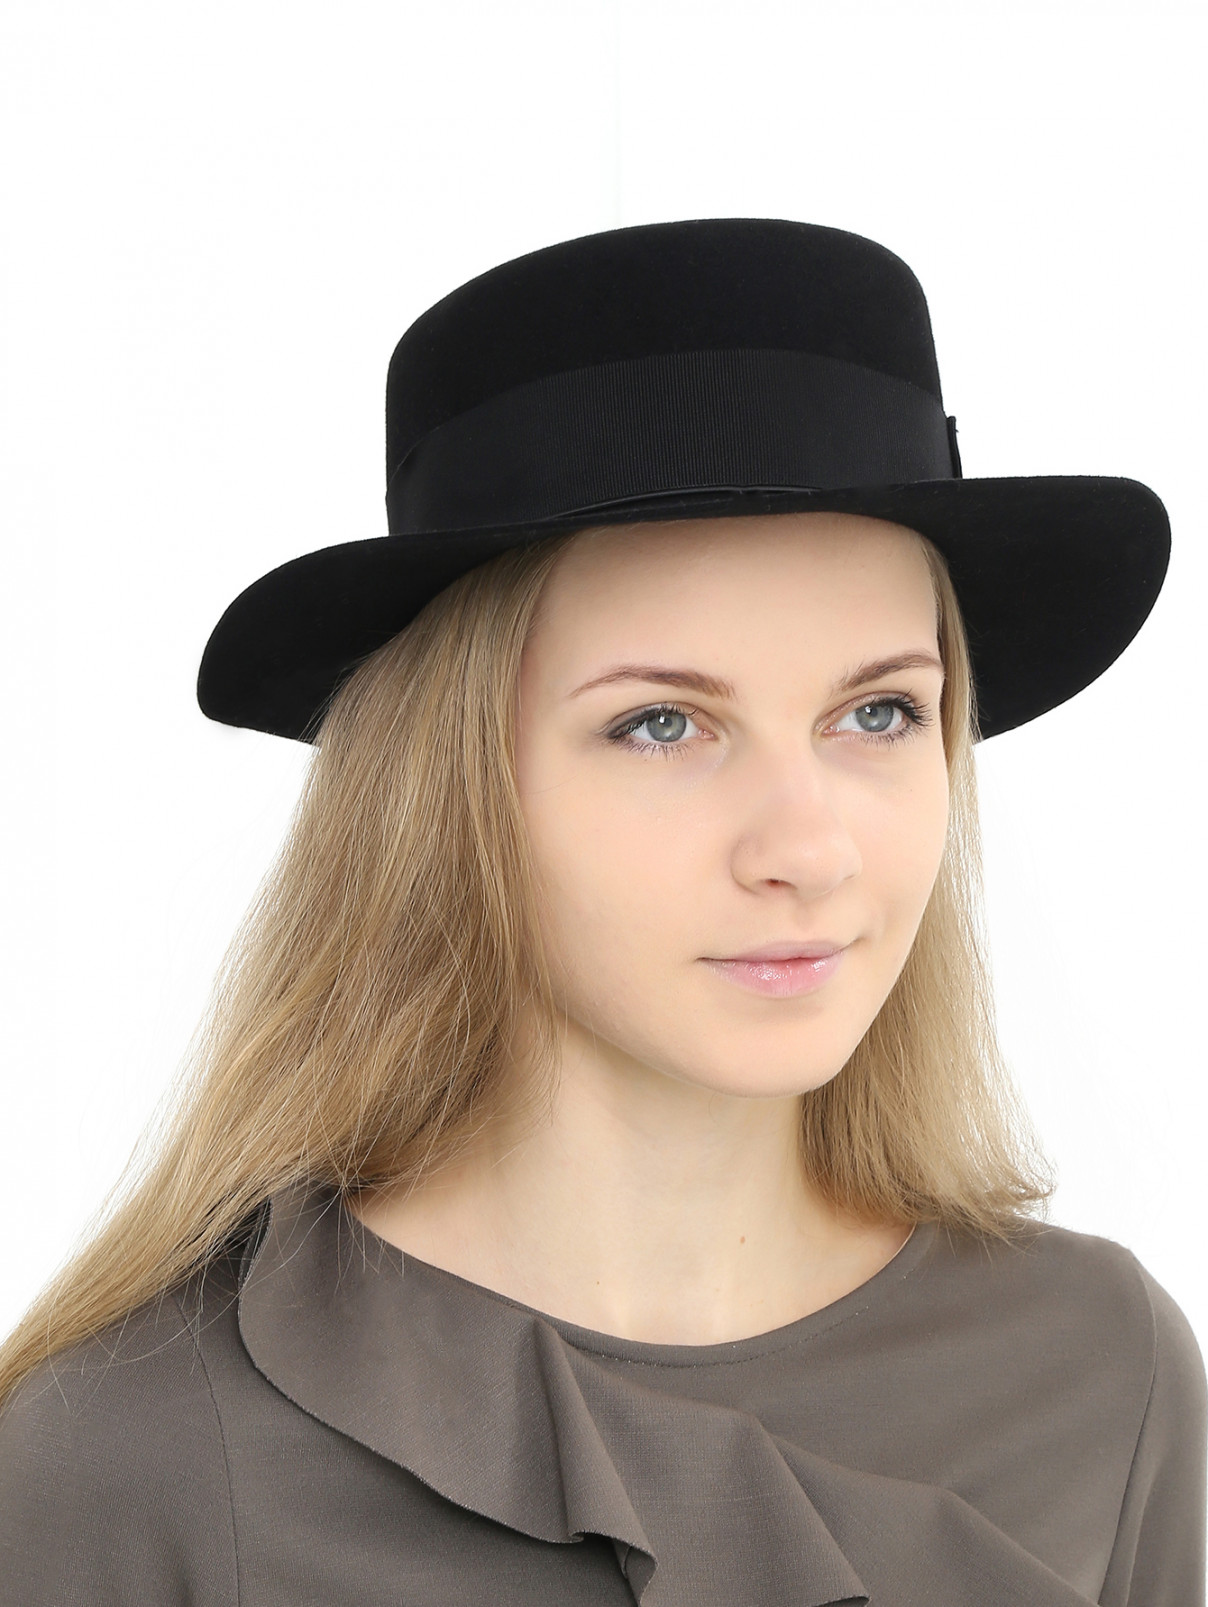 Шляпа из фетра с текстильной отделкой Federica Moretti  –  Модель Общий вид  – Цвет:  Черный